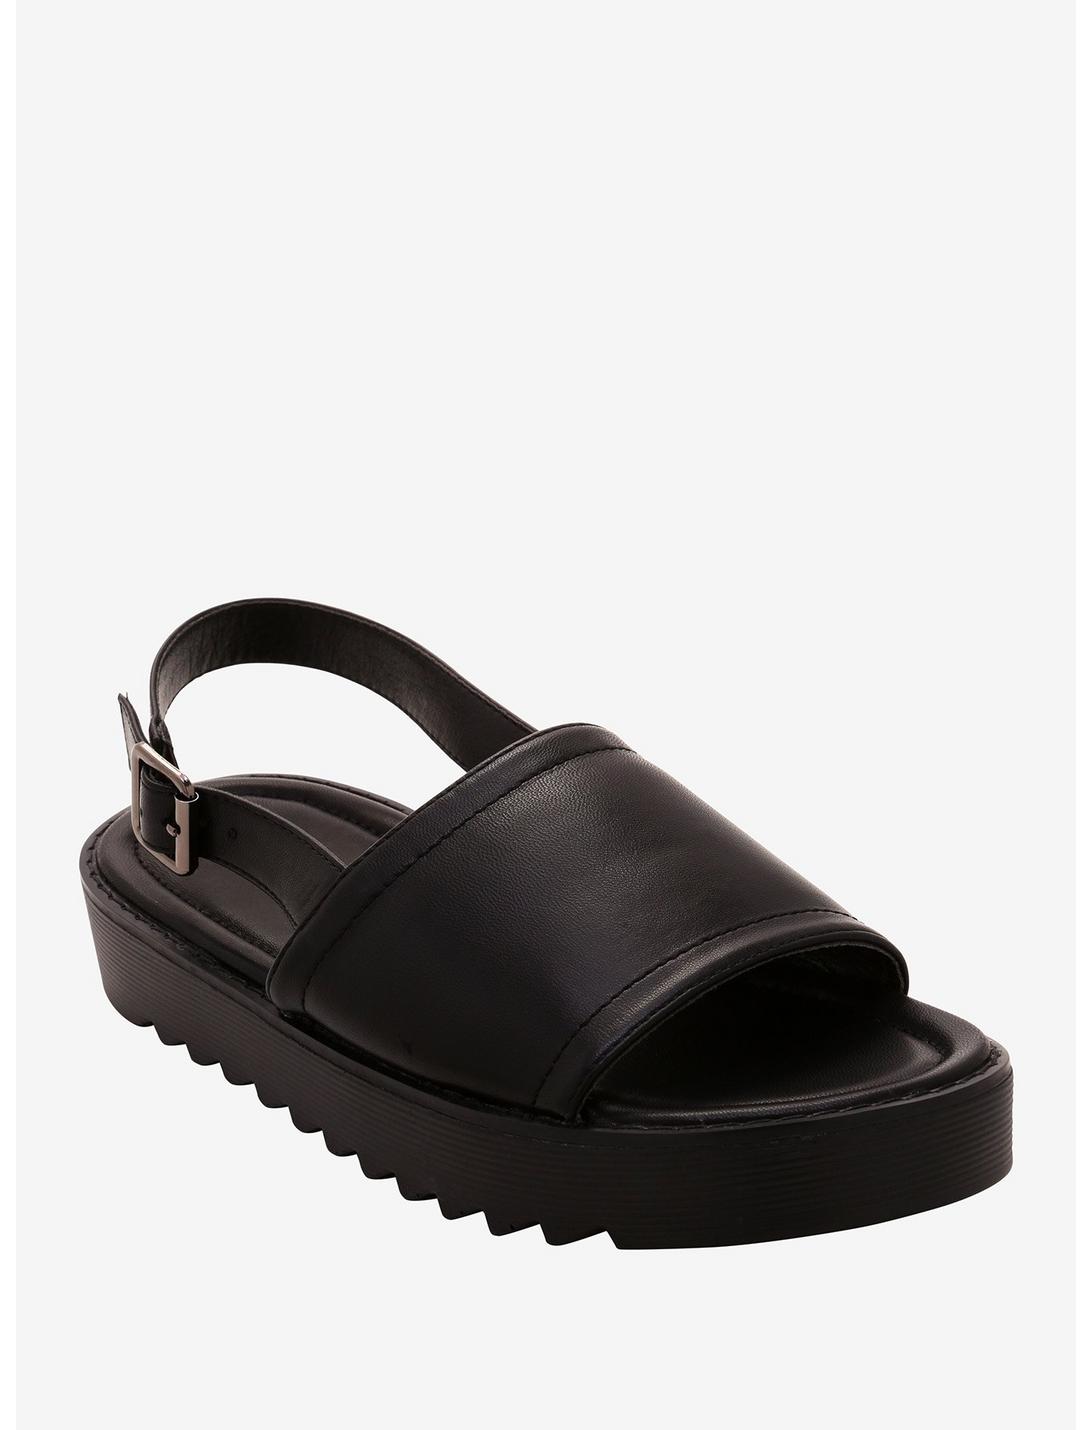 Flatform Buckle Slide Sandals, BLACK, hi-res